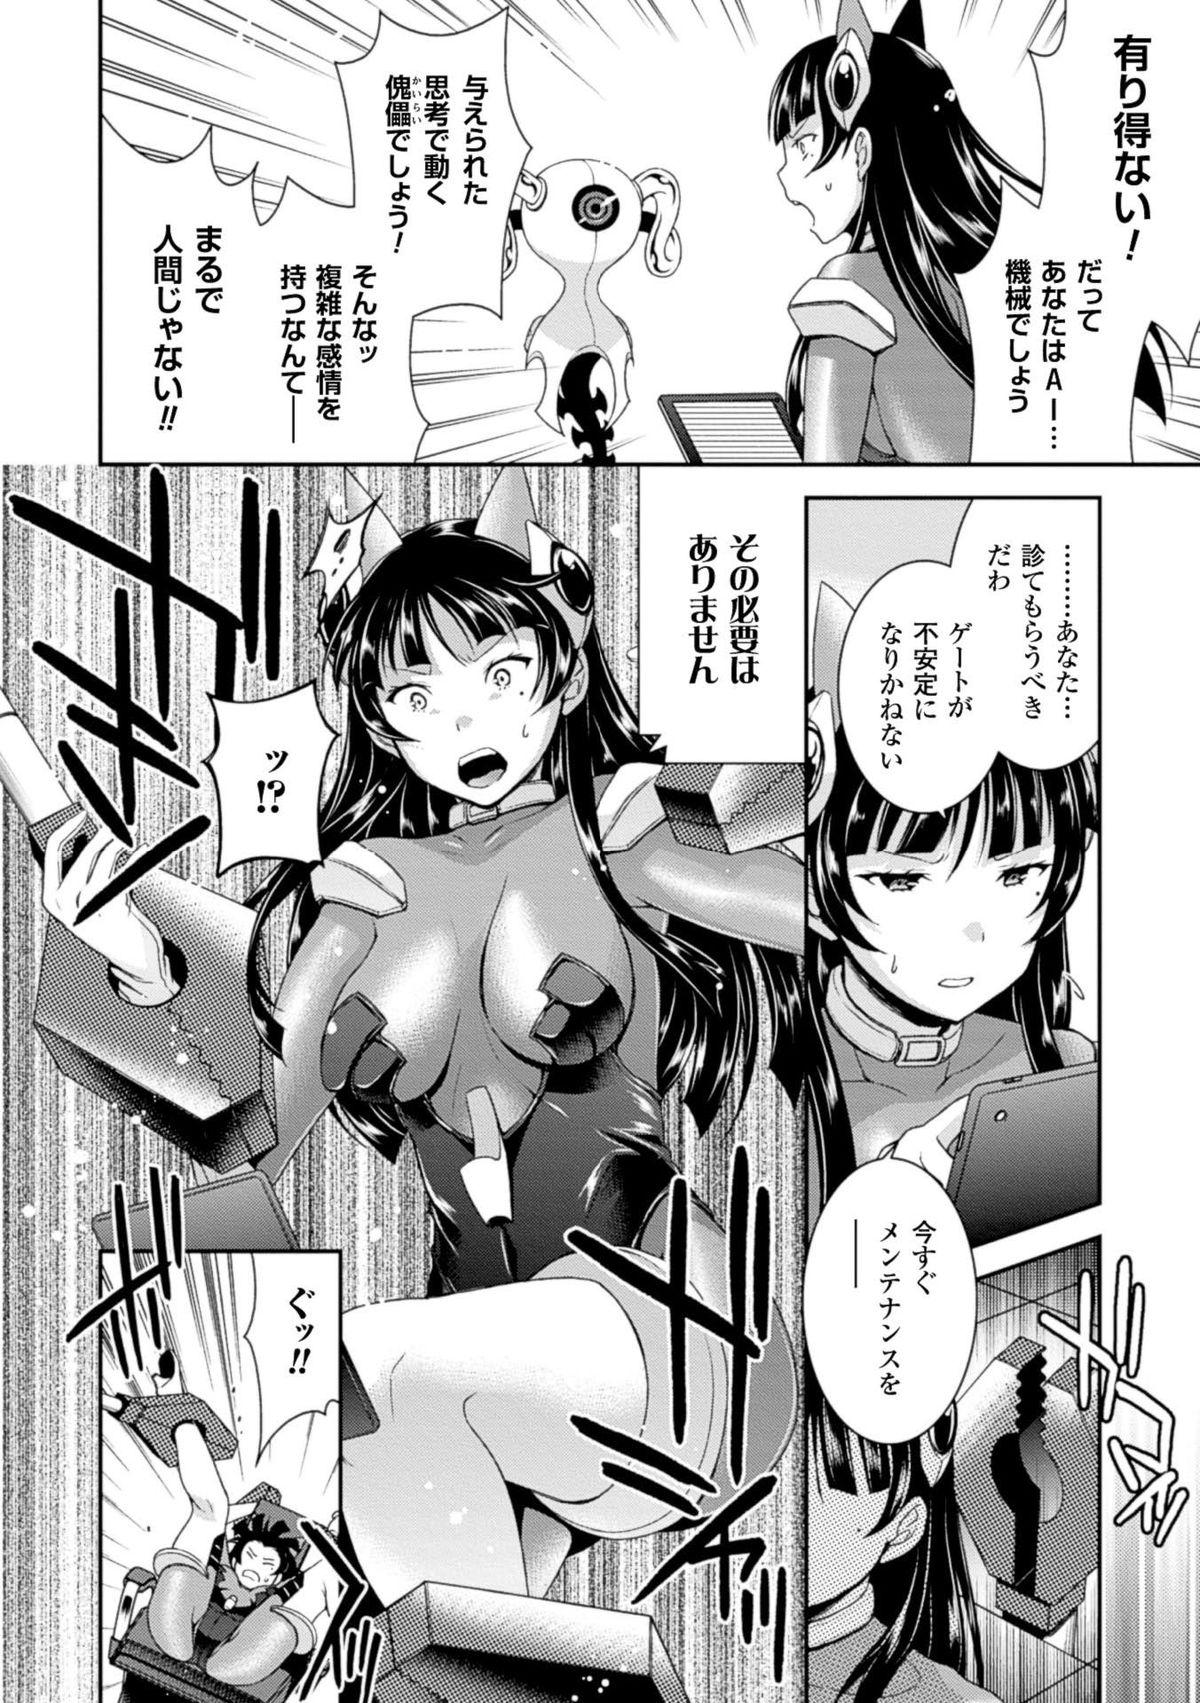 Puba Kikaikan de Monzetsu Iki Jigoku! Vol. 1 Wet - Page 8